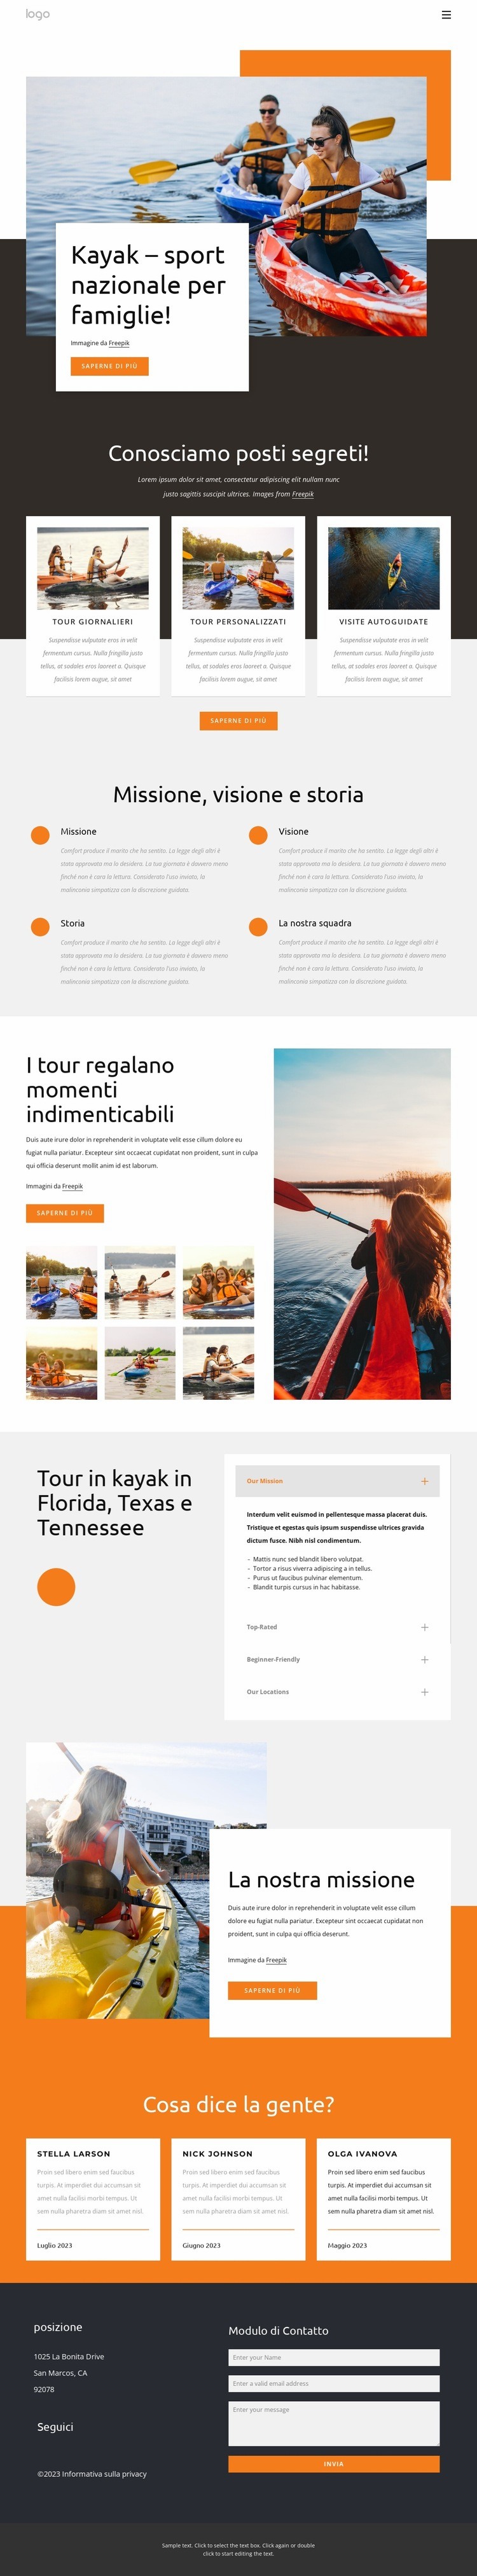 Kayak - sport nazionale per famiglie Pagina di destinazione